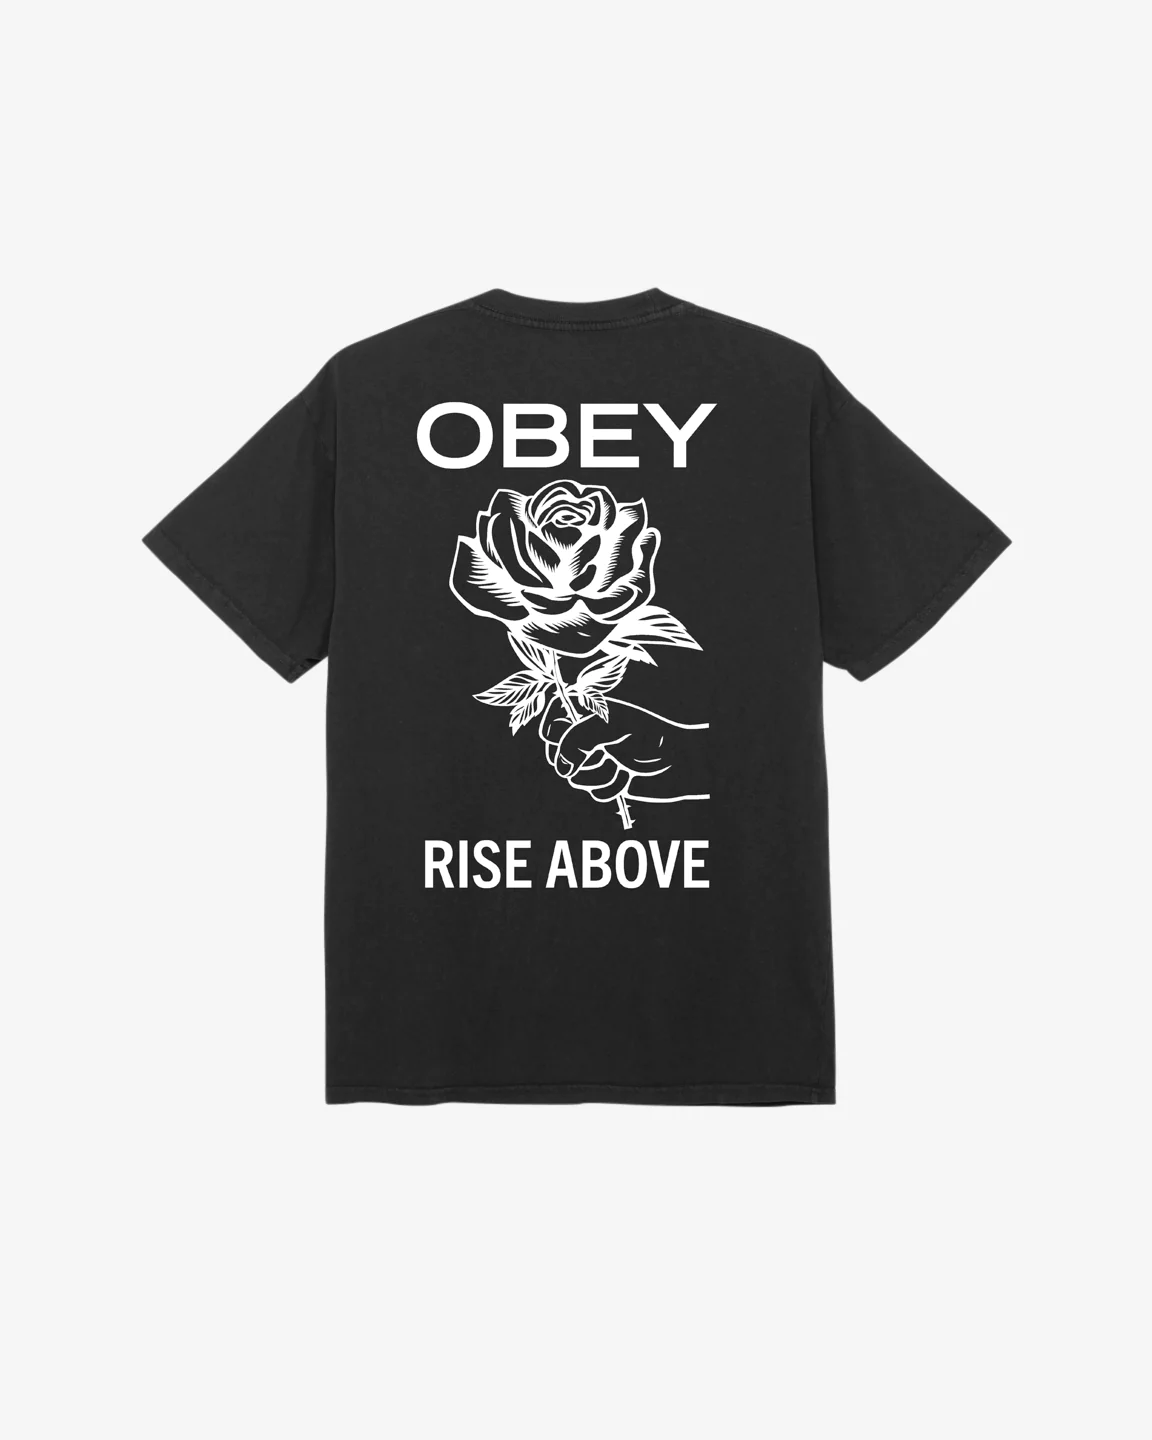 Obey RISE ABOVE ROSE BLACK VINTAGE